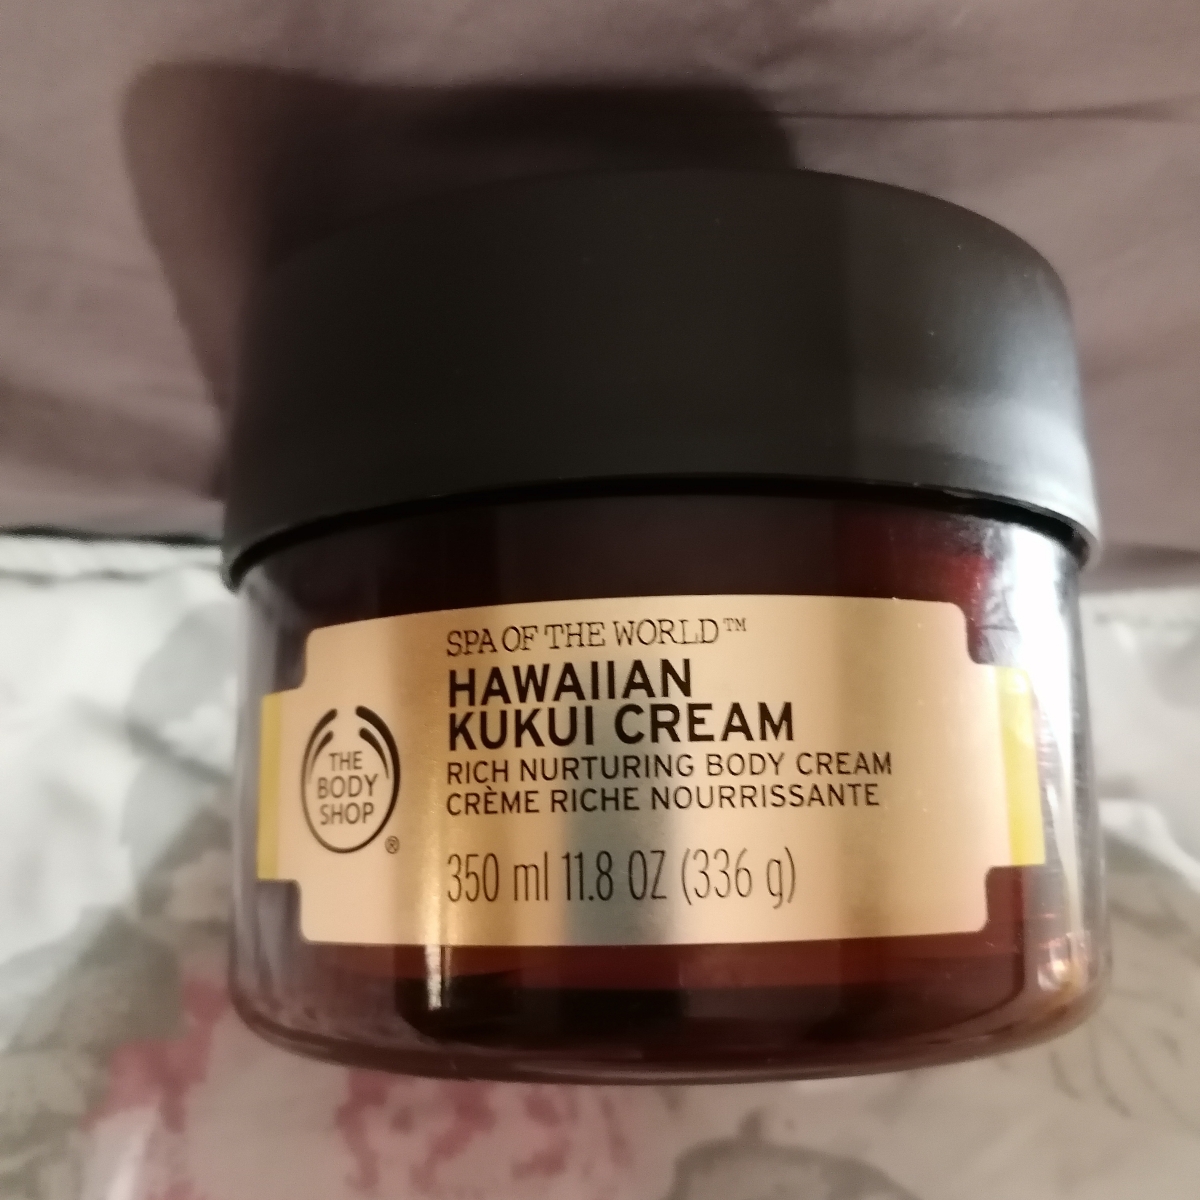 The Body Shop Hawaiian Kukui Cream Reviews | abillion